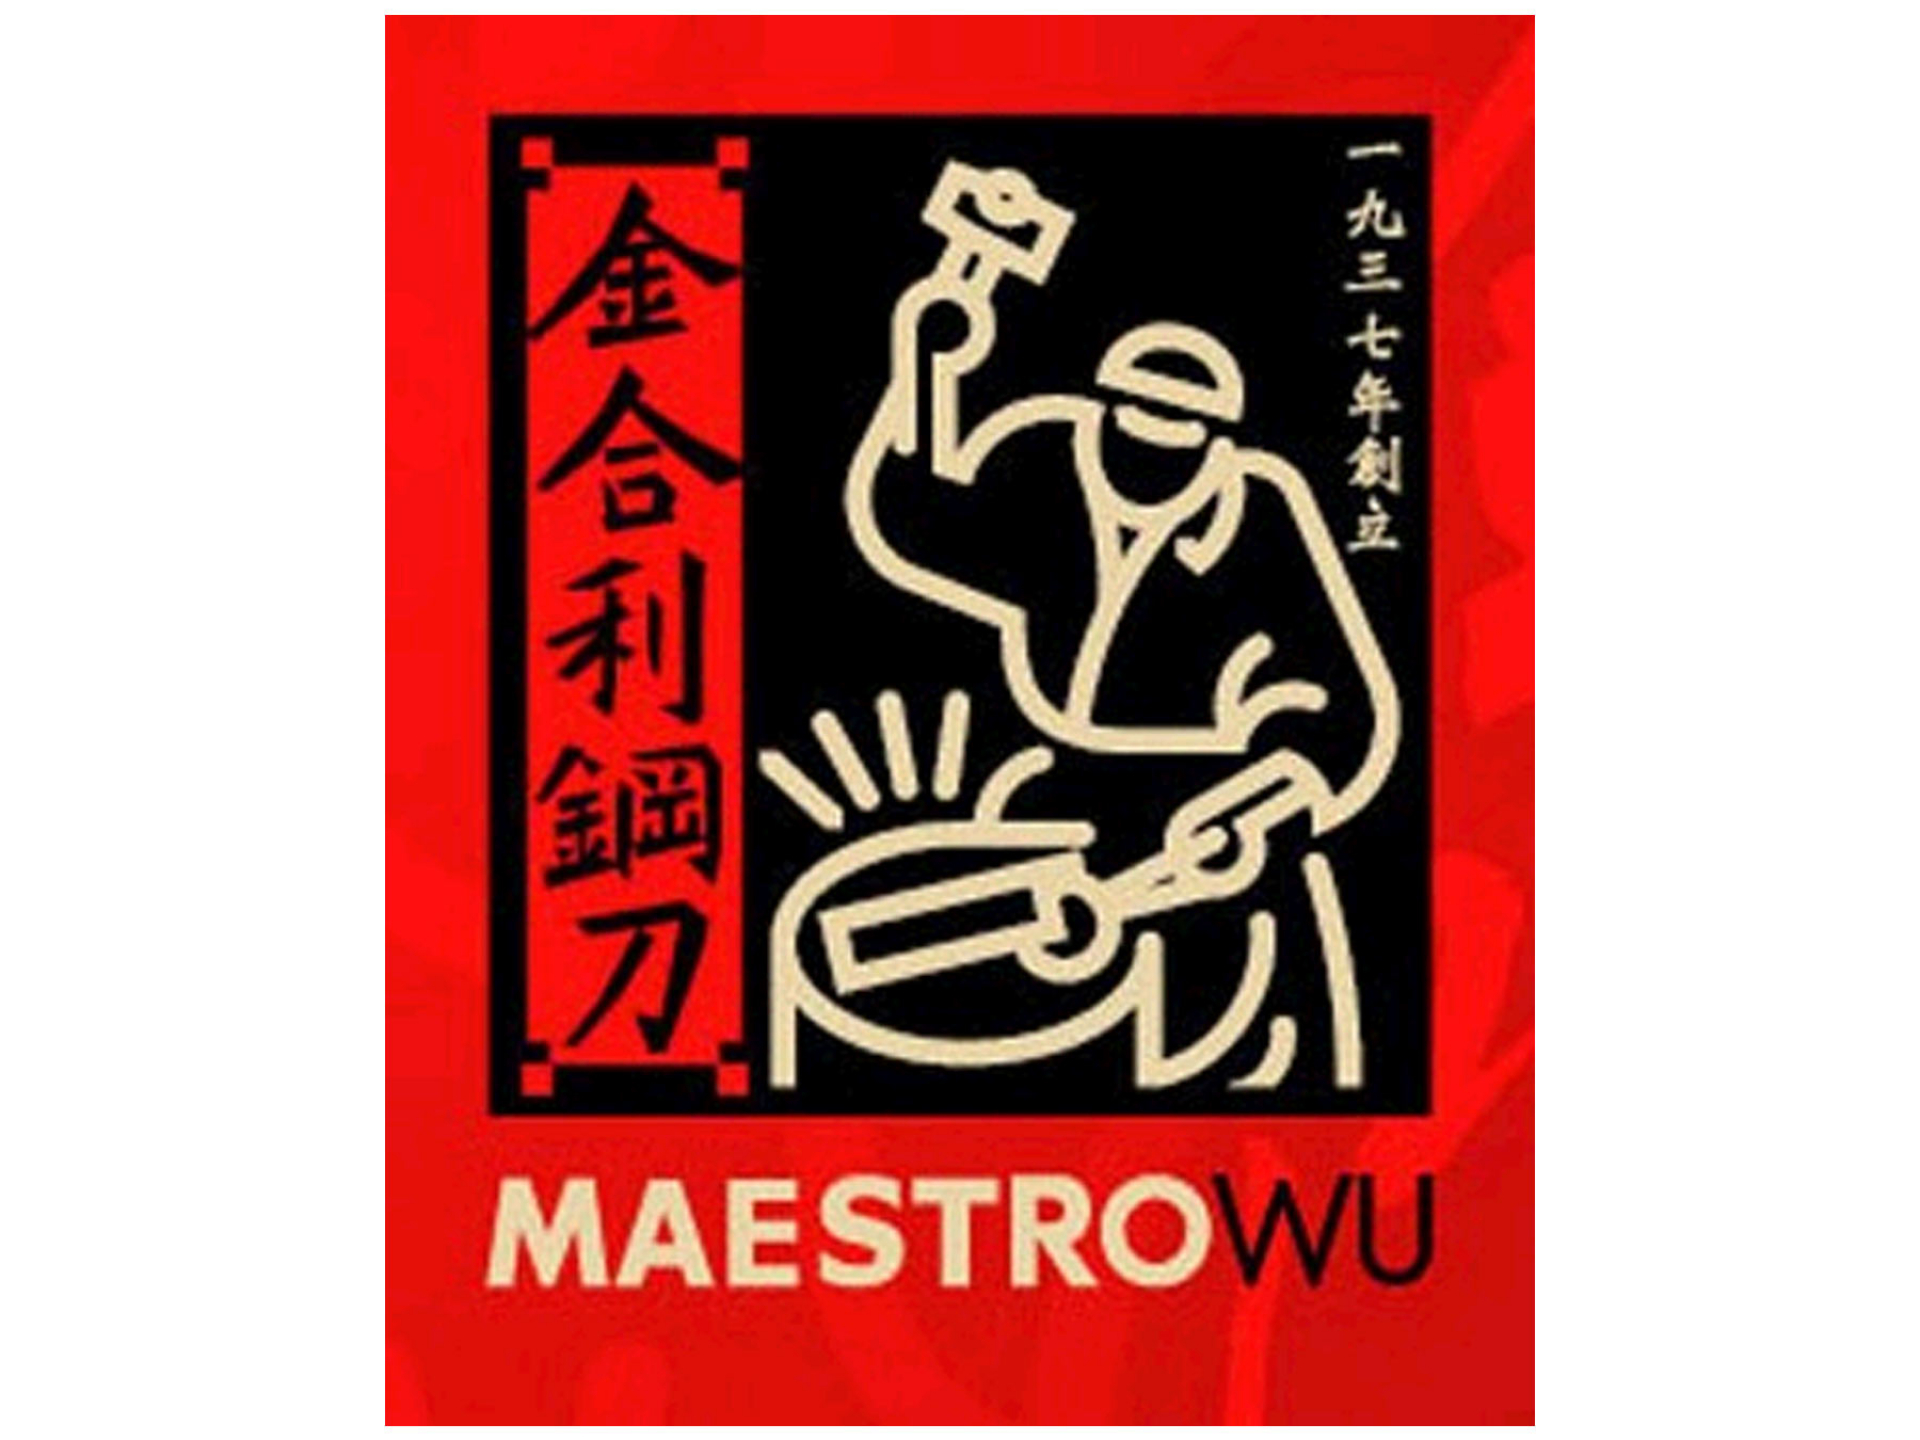 Maestro Wu D-11 Chinesisches Hackmesser / Slicer groß 18 cm